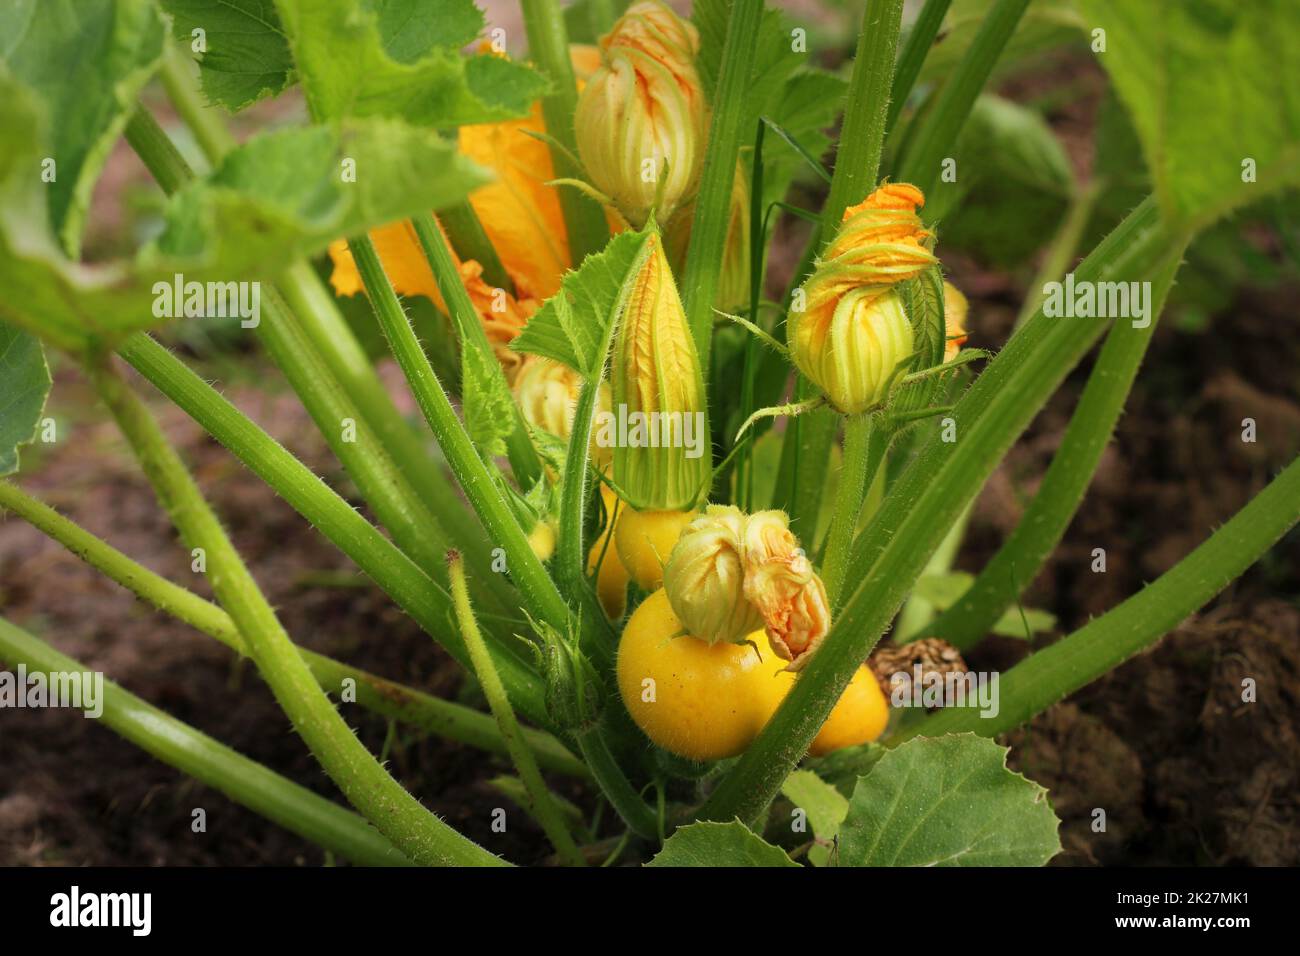 Calabacín amarillo redondo con hojas verdes y flores amarillas que crecen en el jardín Foto de stock